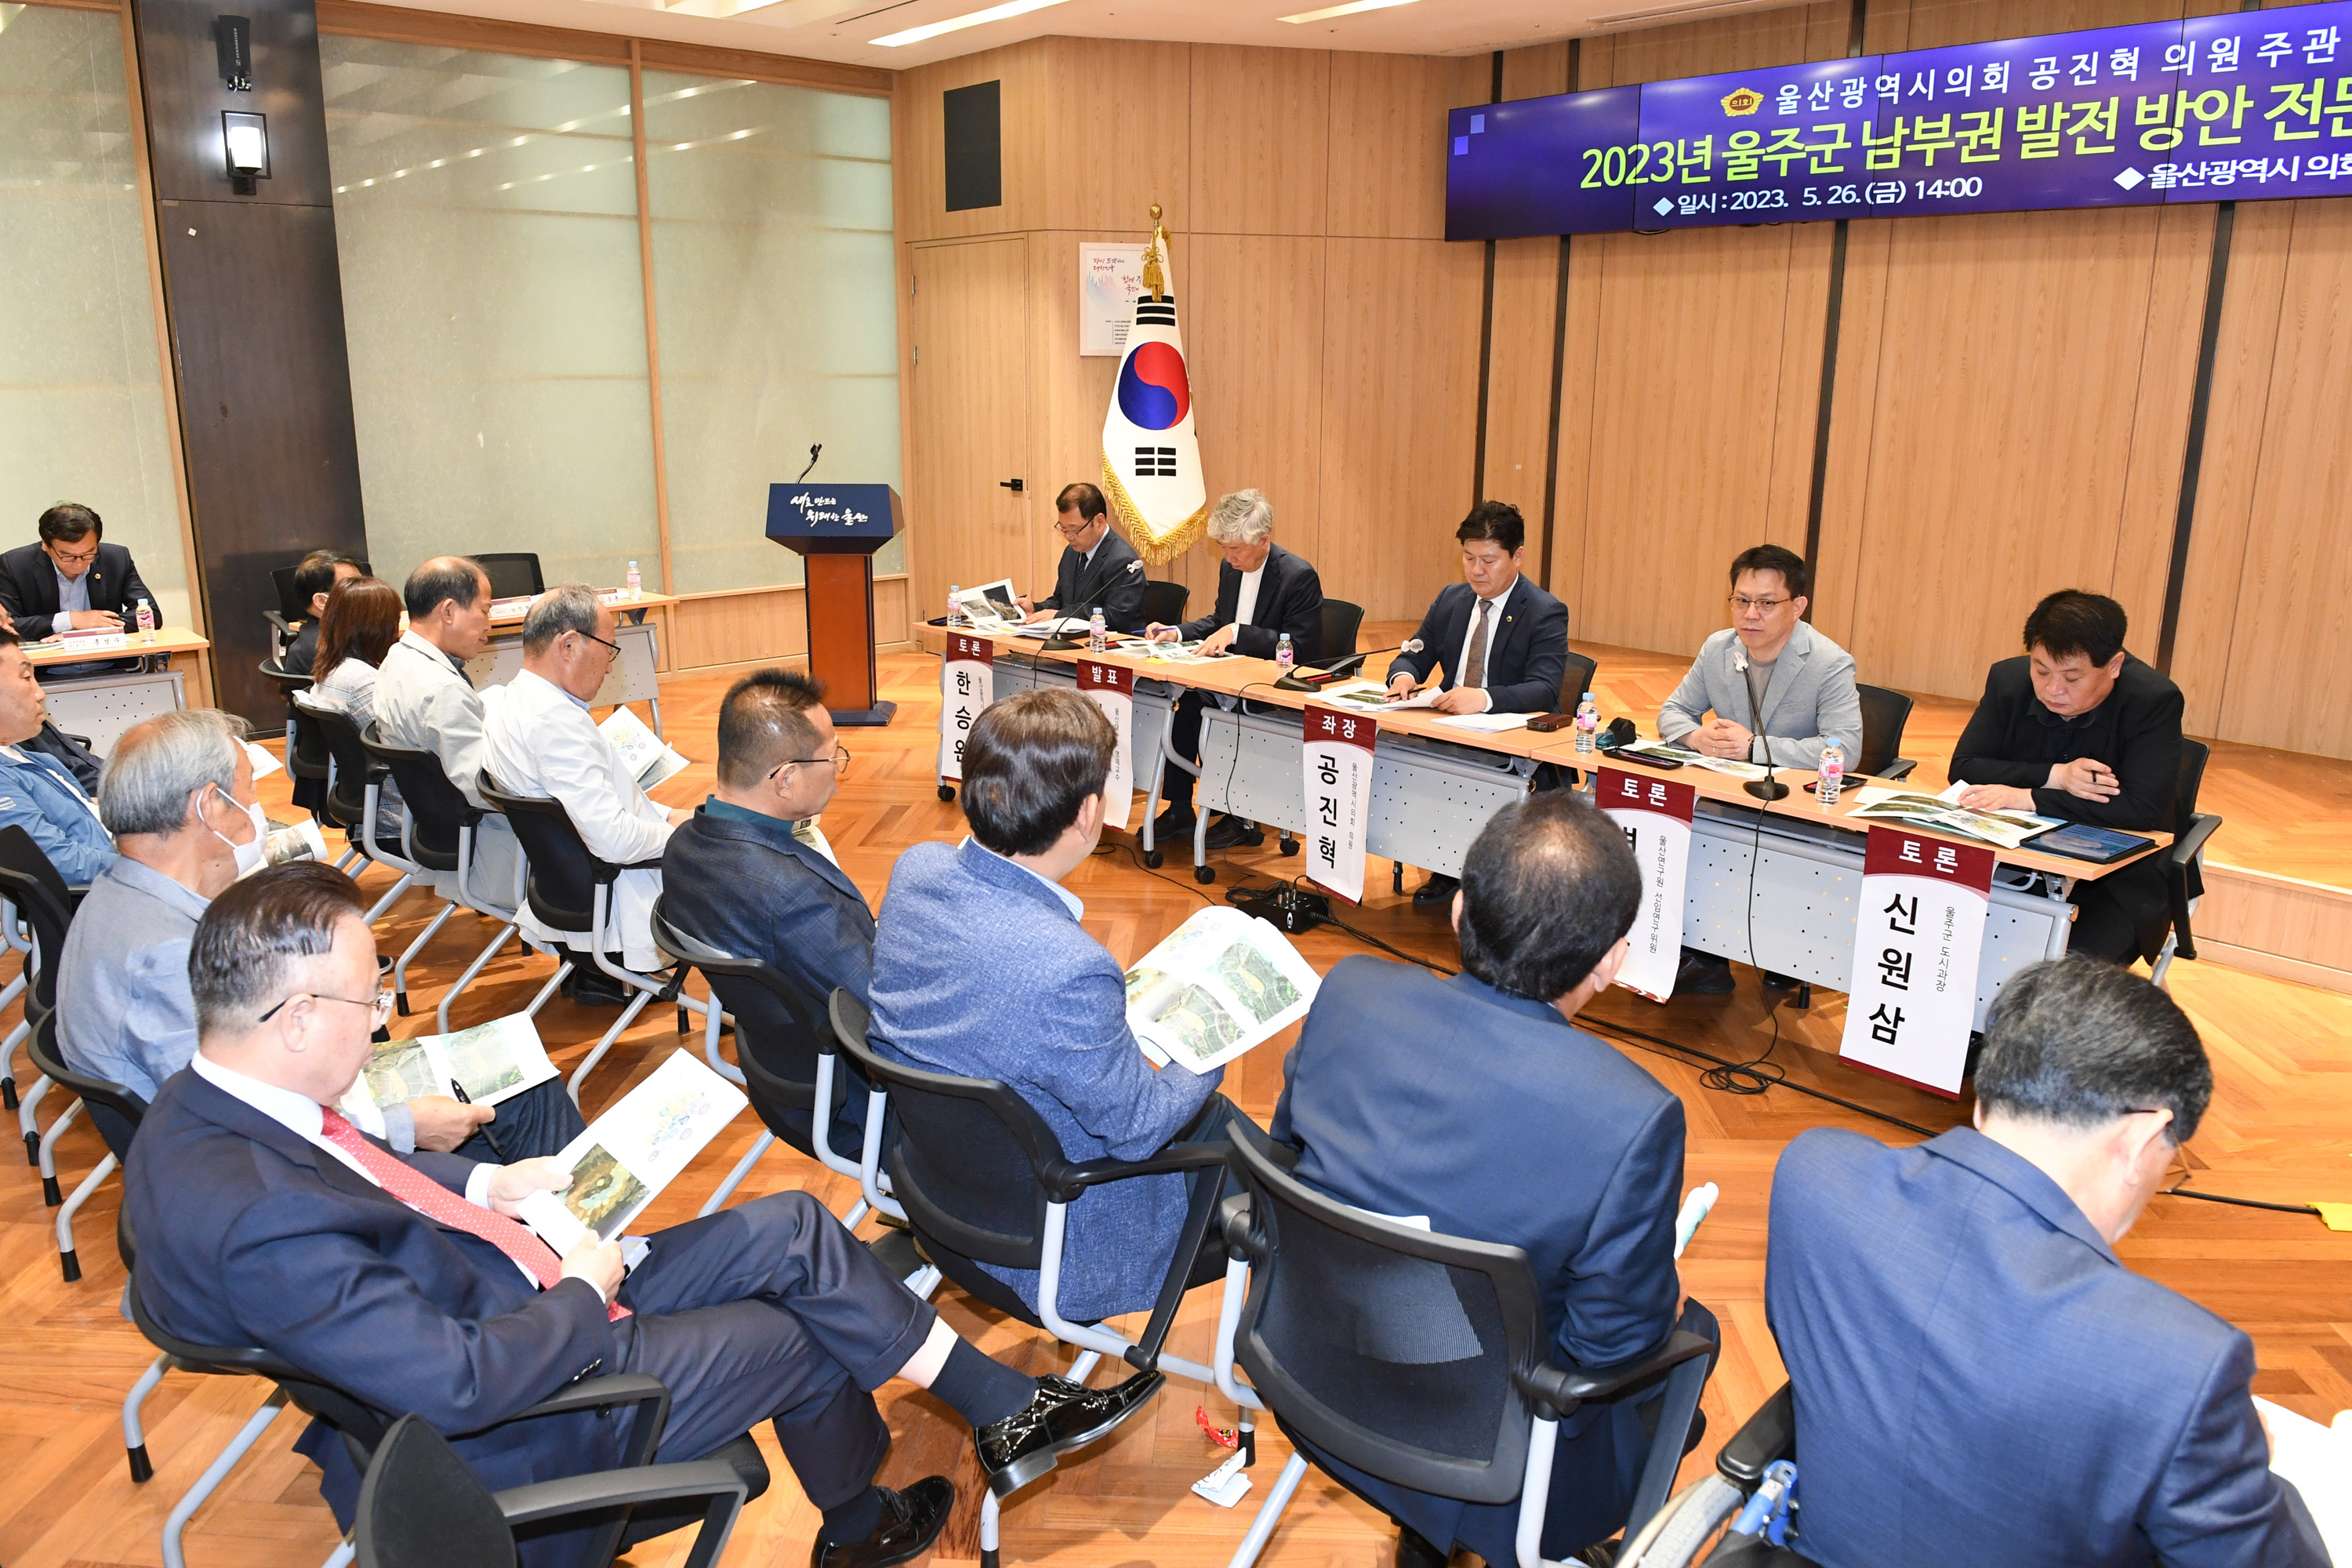 공진혁 의원, 2023년 울주군 남부권 발전 방안 전문가 토론회 개최11